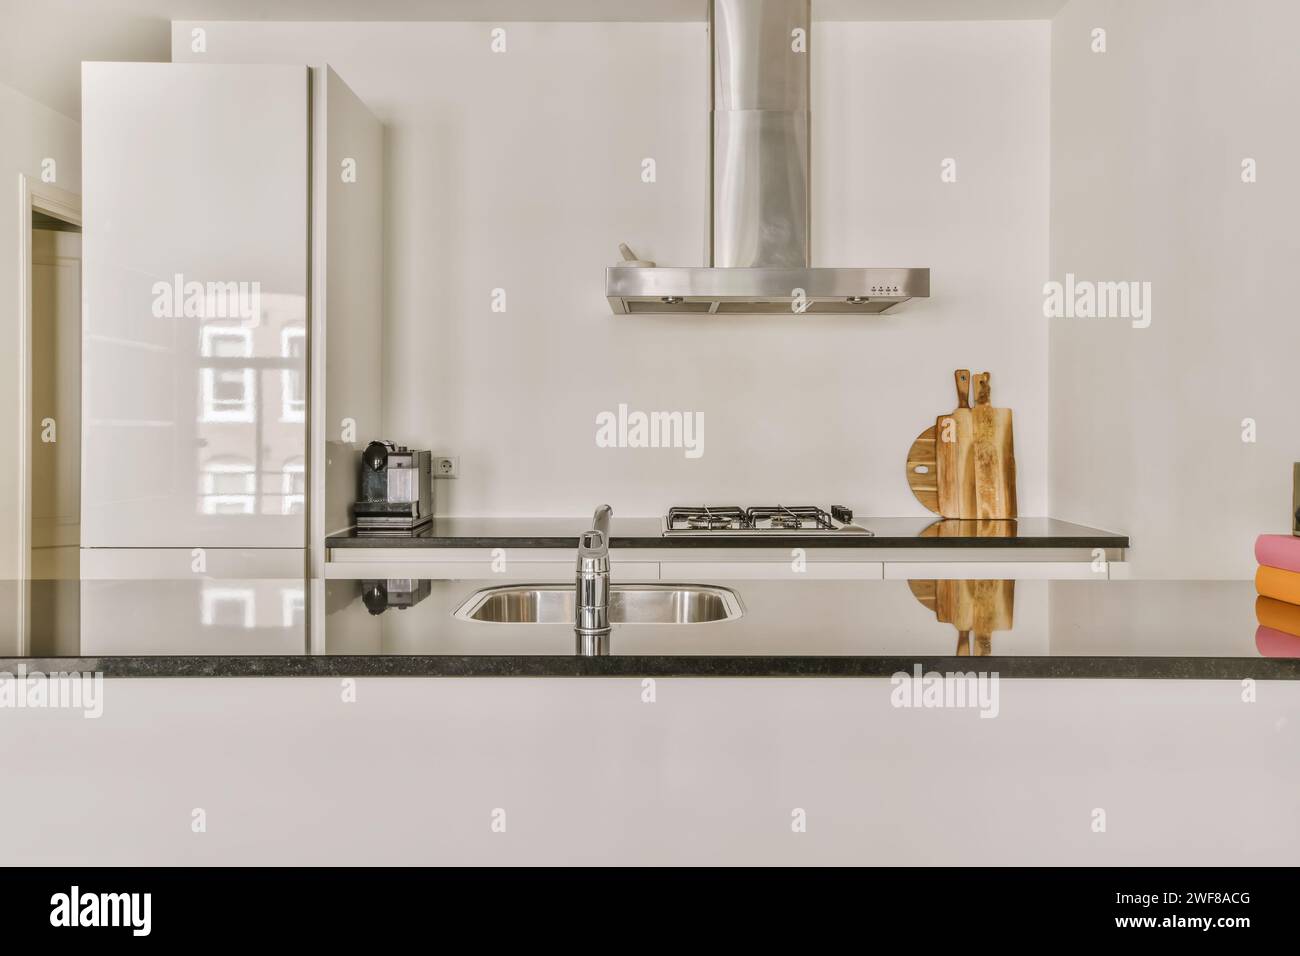 Une cuisine élégante dispose d'une cuisinière en acier inoxydable, d'une hotte et d'un évier, complétés par un design minimaliste d'armoire blanche. Banque D'Images